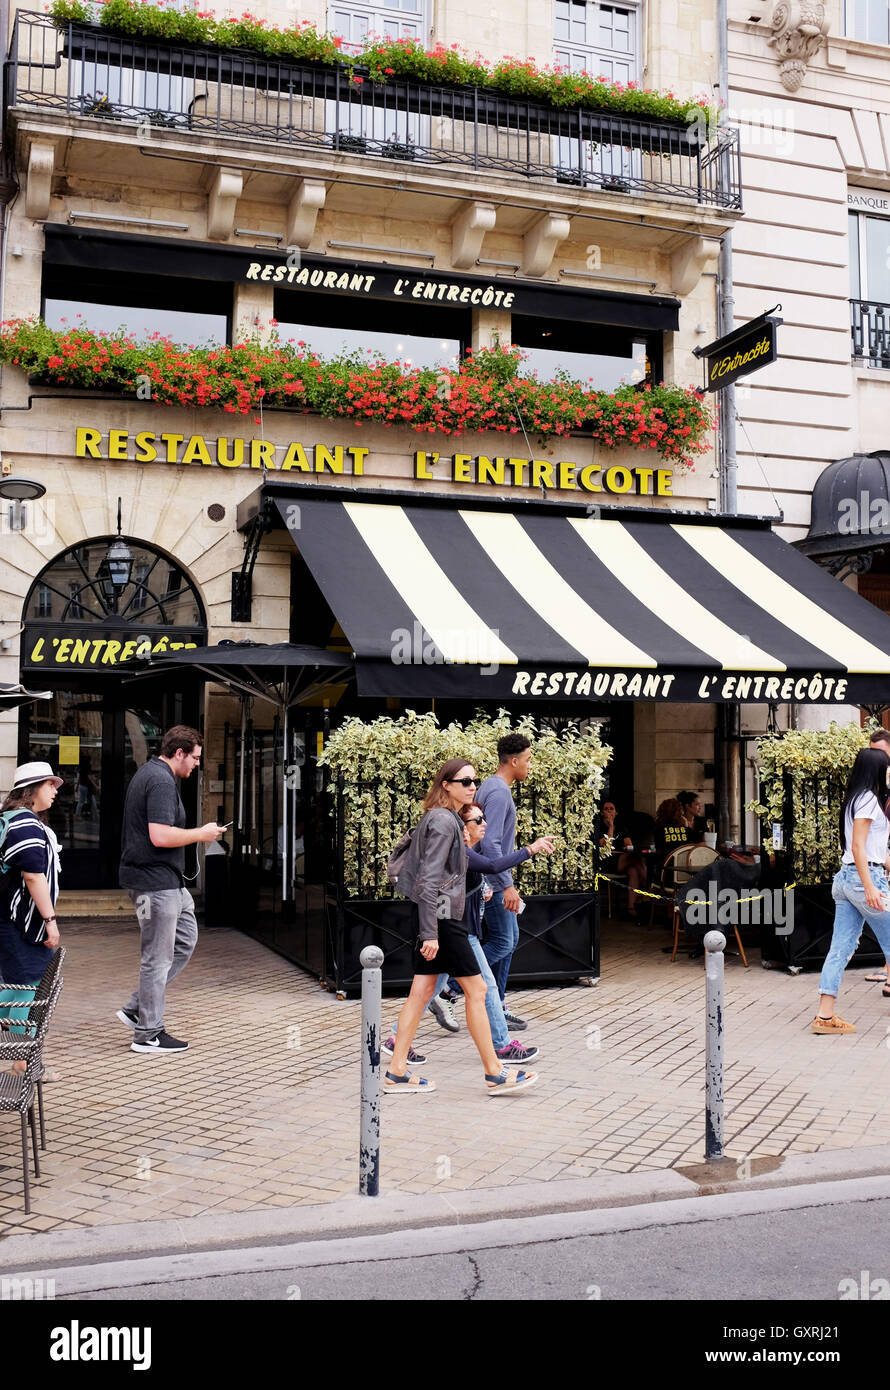 The famous Restaurant L'Entrecote in Bordeaux France Stock Photo